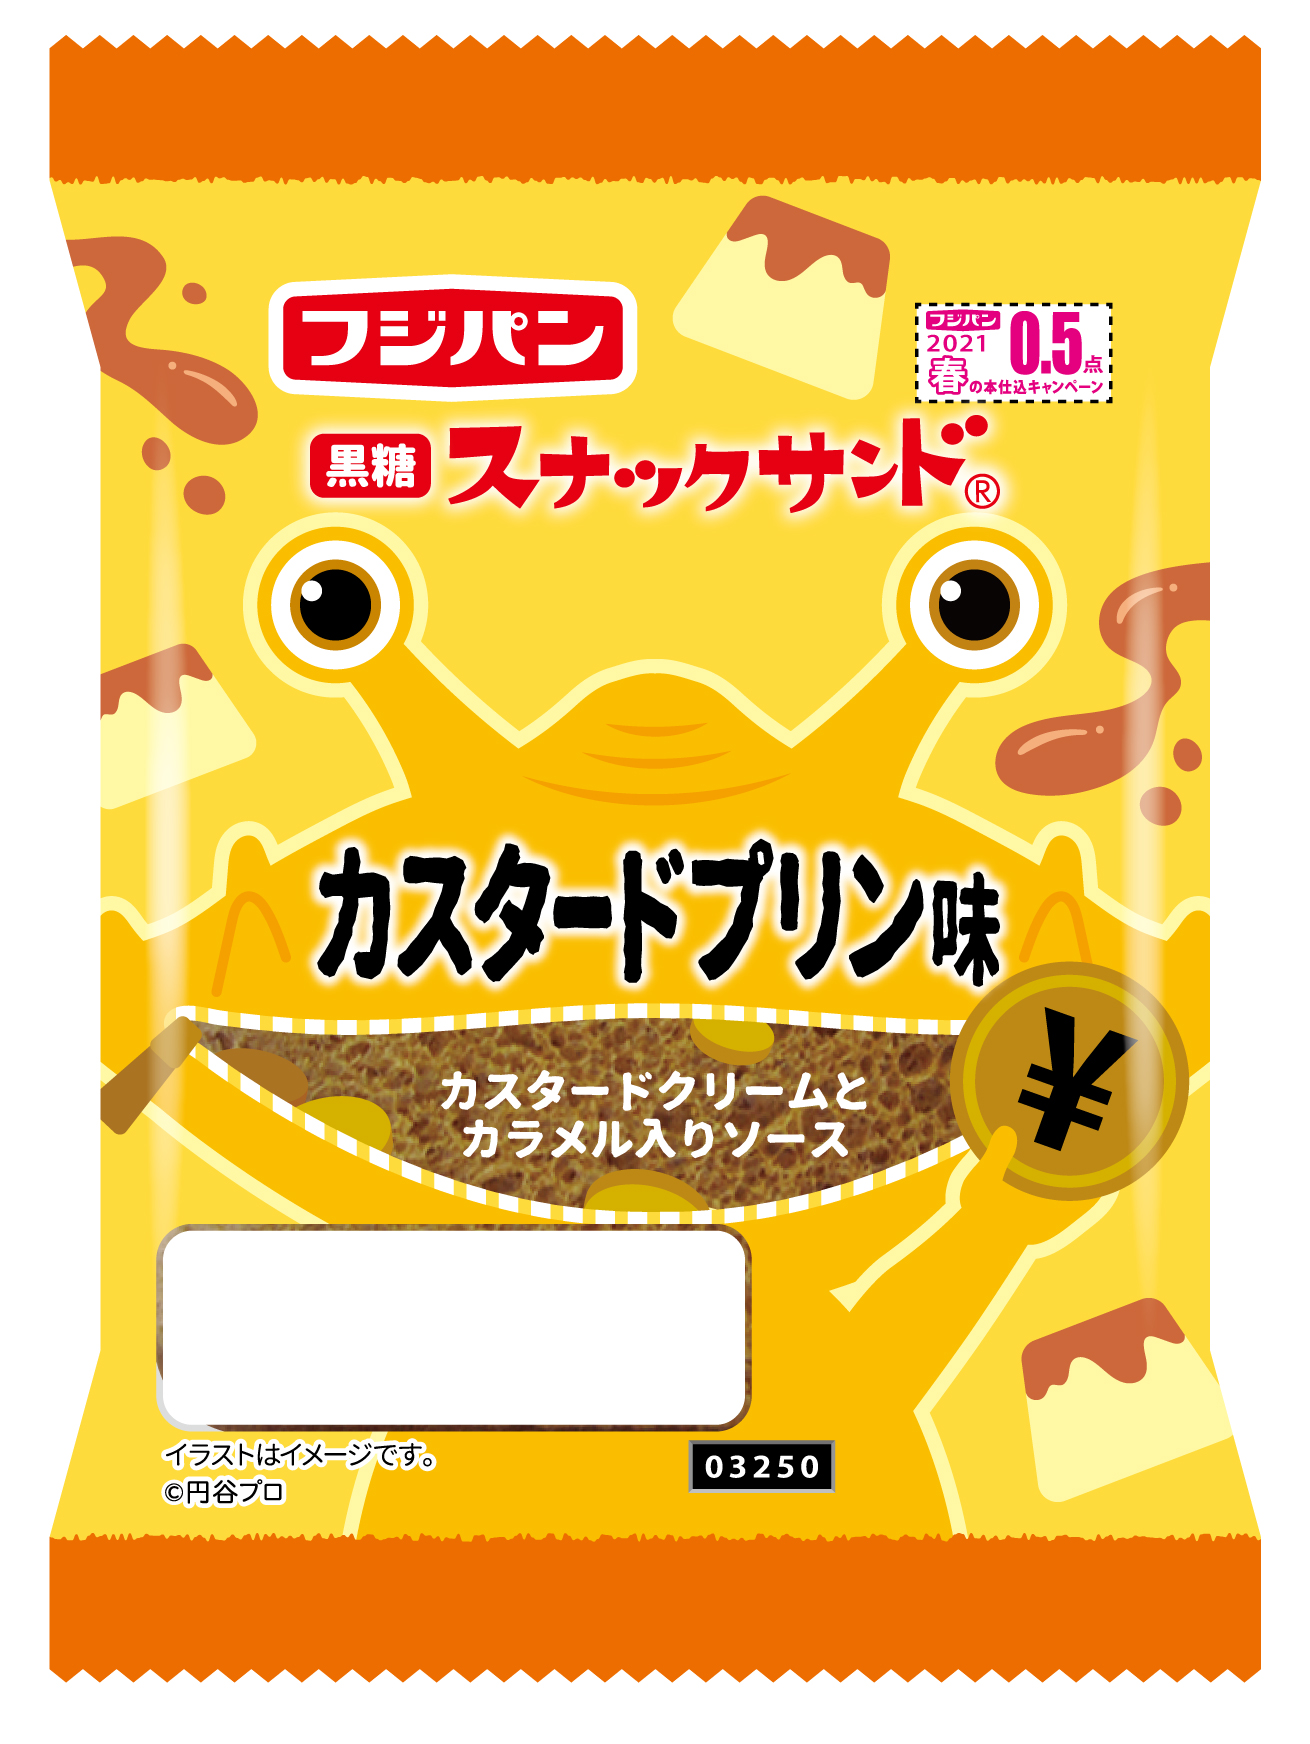 ウルトラマン カネゴン ブースカがフジパン スナックサンド の特別パッケージに登場 21年4月1日 木 より発売 円谷ステーション